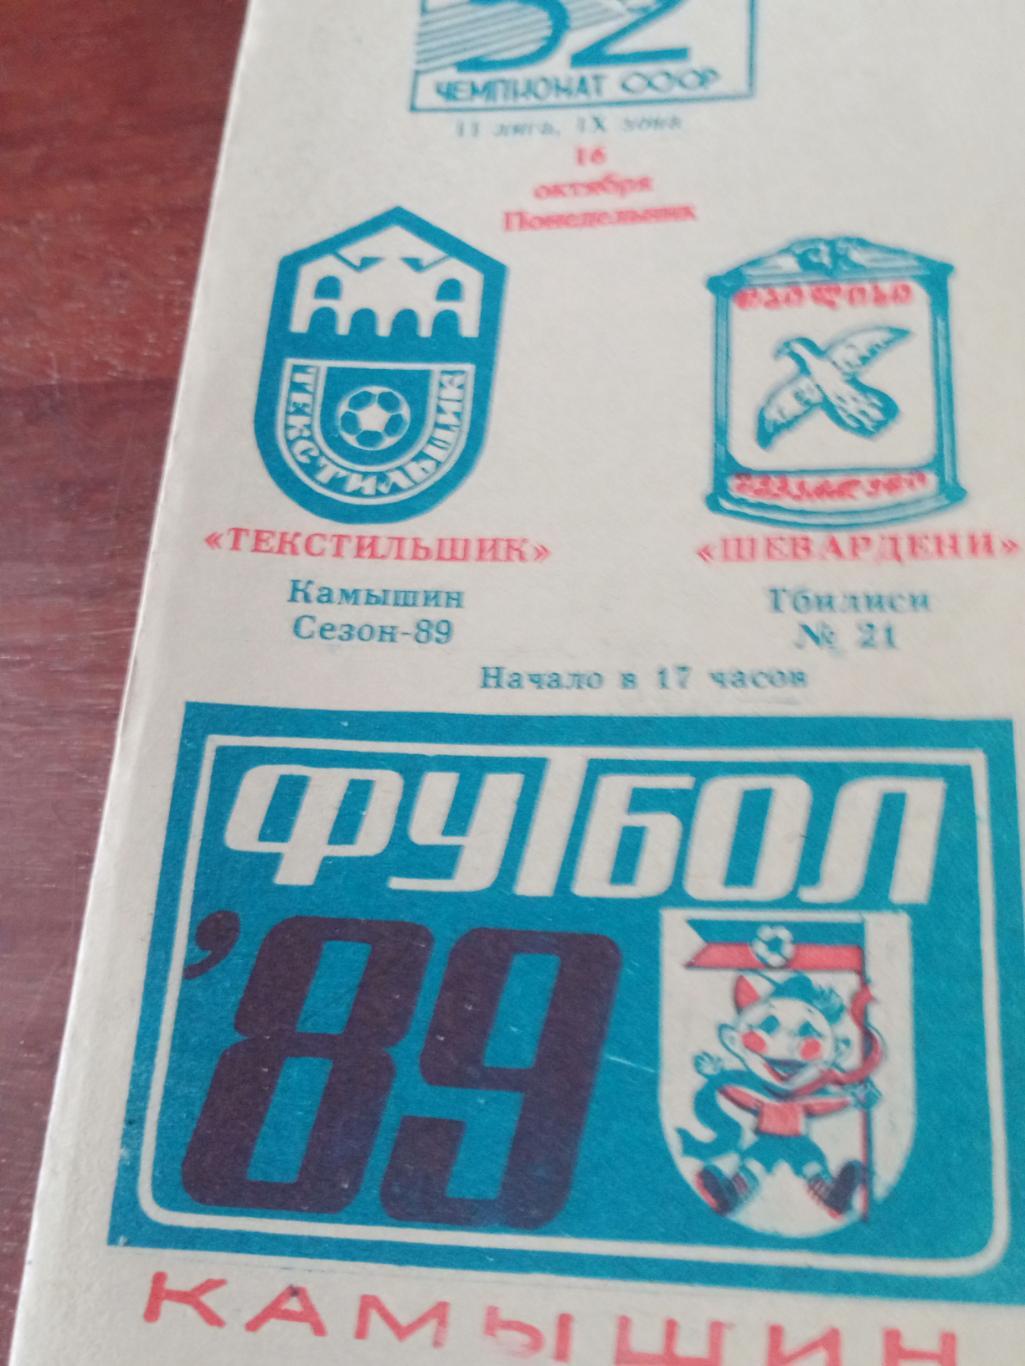 АКЦИЯ! Текстильщик Камышин - Шевардени Тбилиси. 16 октября 1989 год